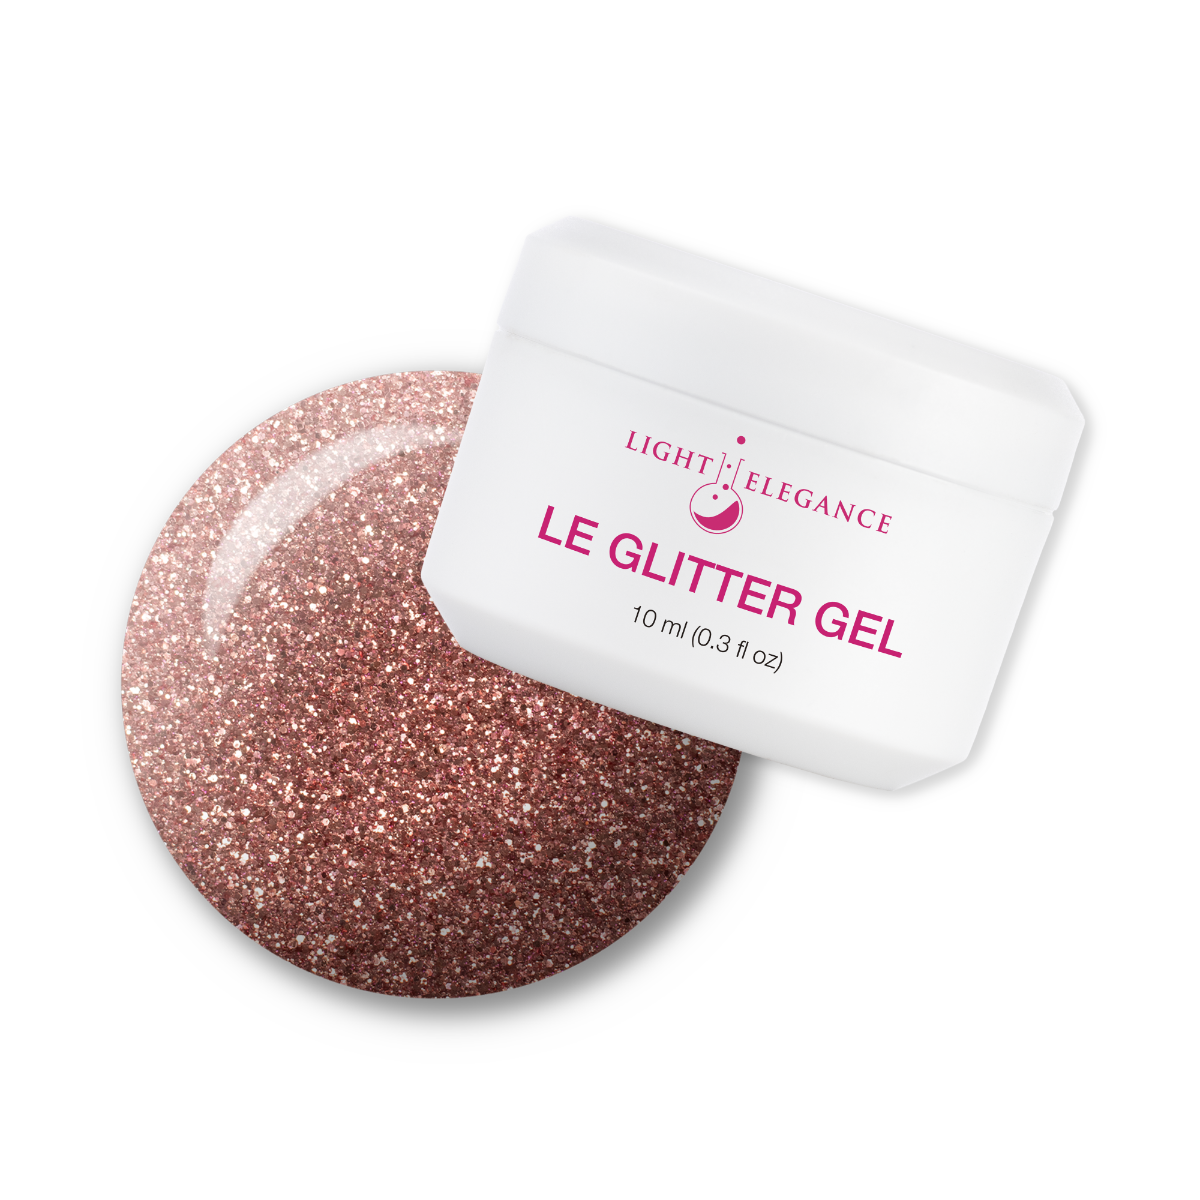 Light Elegance Glitter Gel - Diamond in the Rough :: New Packaging